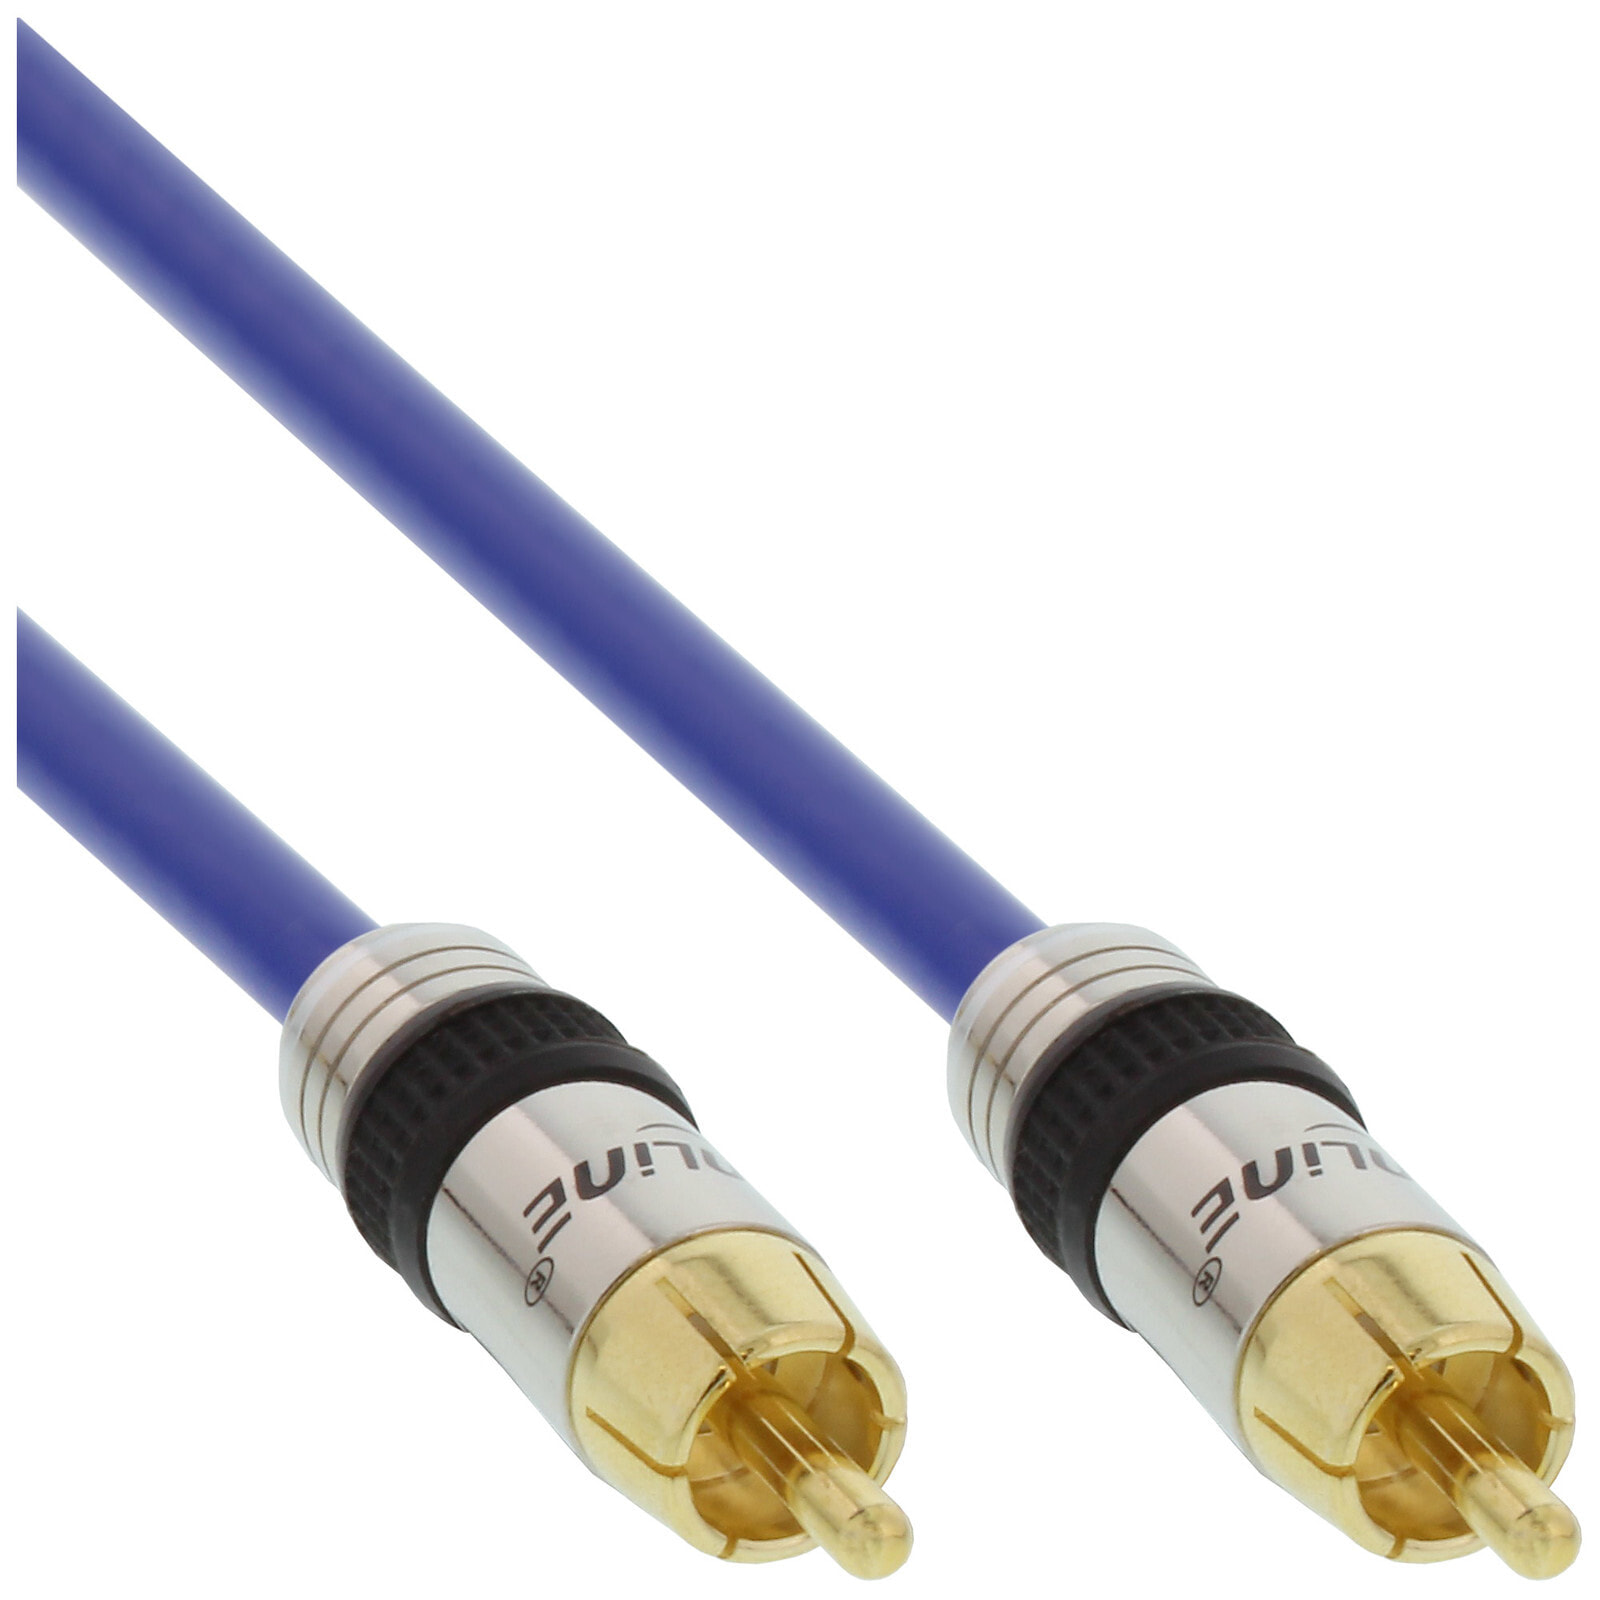 InLine 89803P композитный видео кабель 3 m RCA Синий